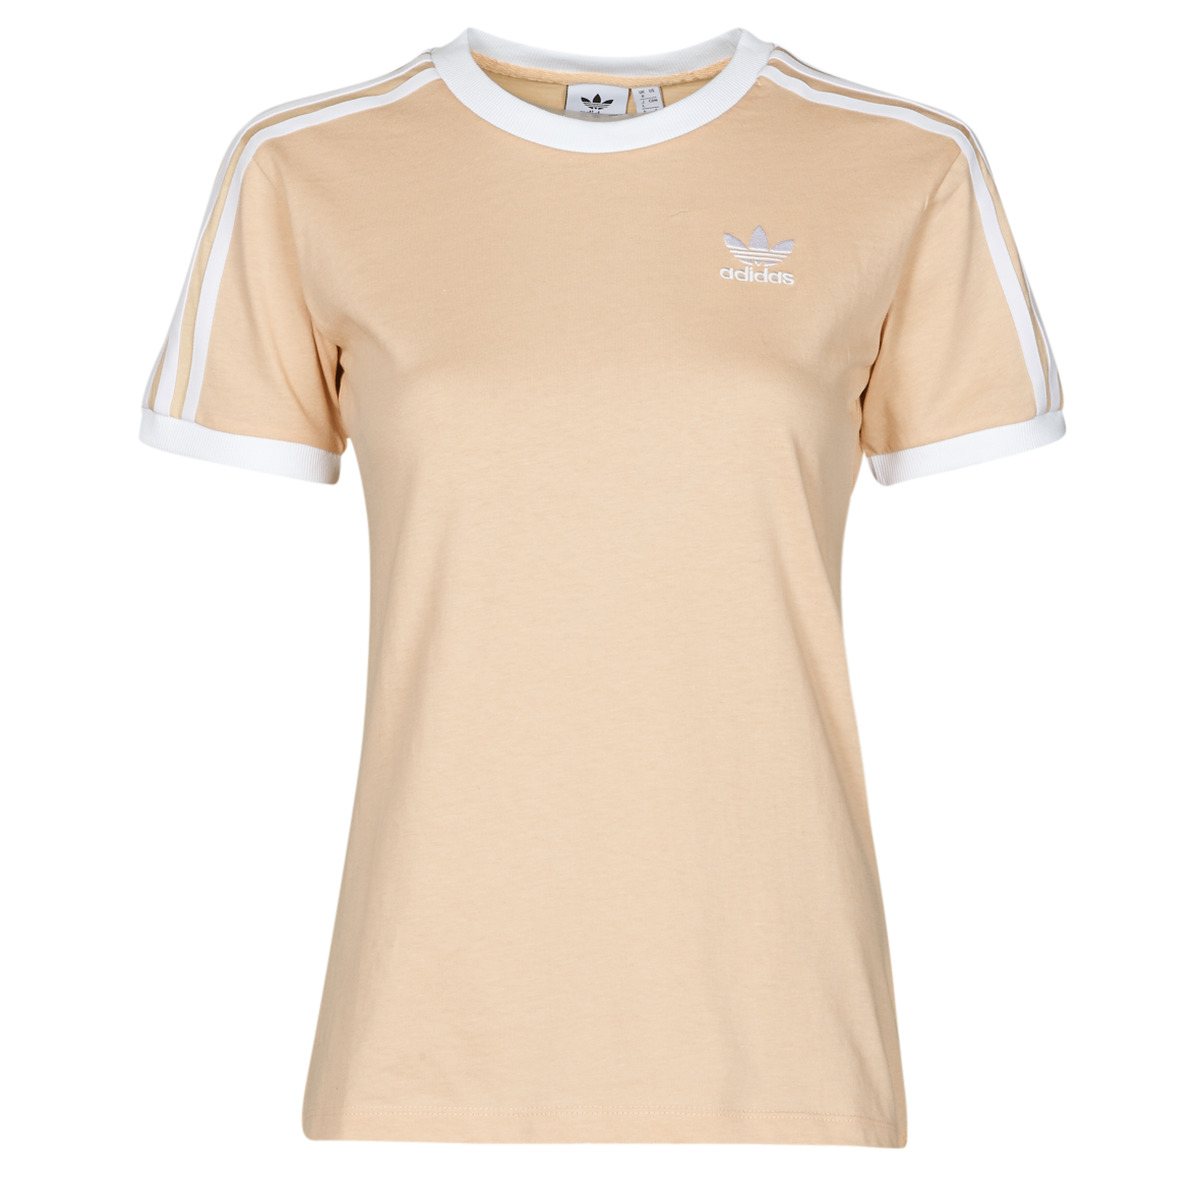 Textiel Dames T-shirts korte mouwen adidas Originals 3 STRIPES TEE Orange